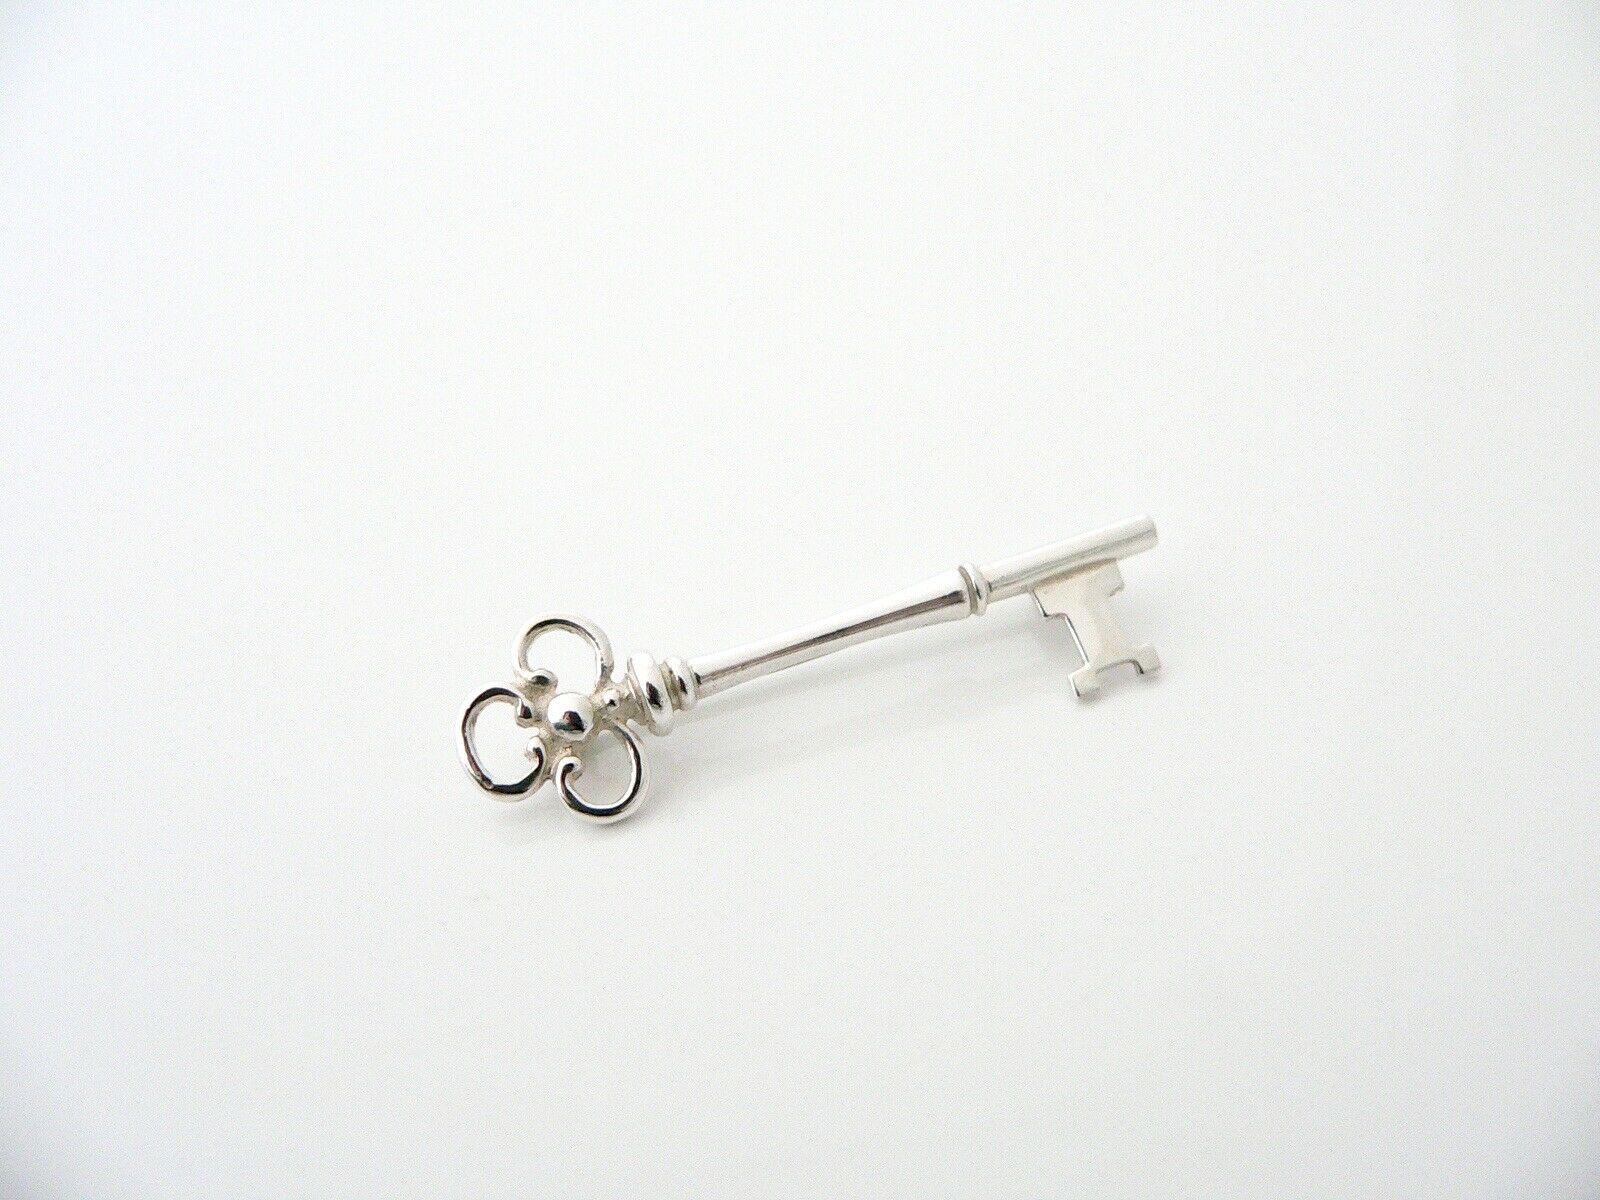 Tiffany & Co Silver Trefoil Key Pin Brooch Love Gift Art